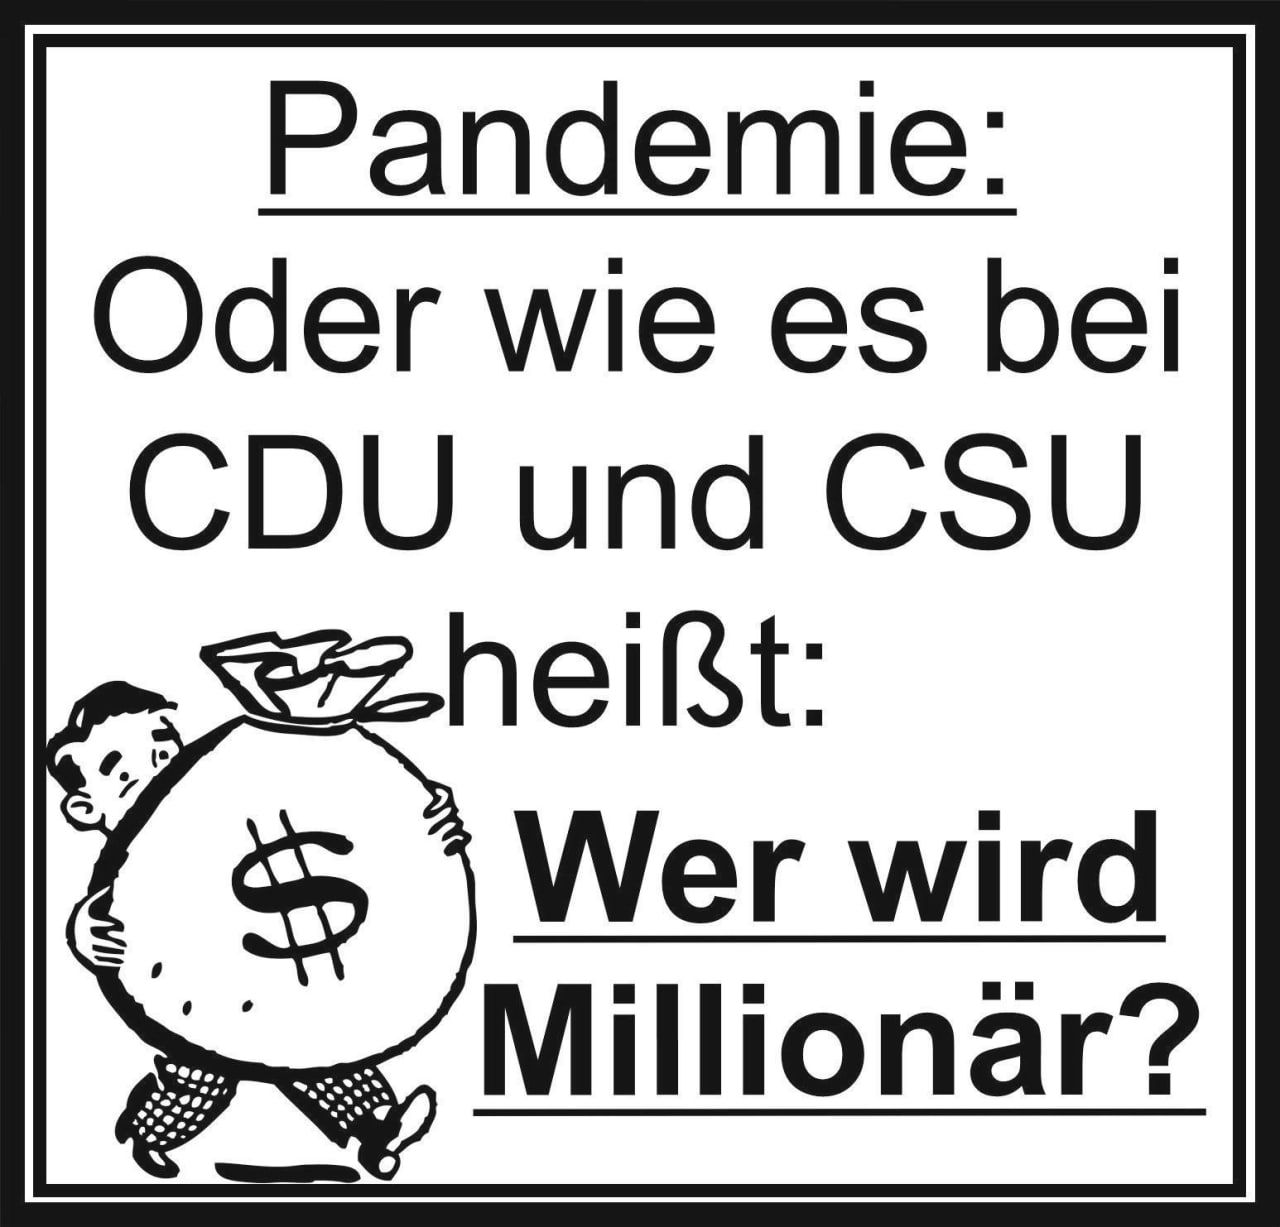 Pandemie: Oder wie heisst es bei der CDU / CSU?